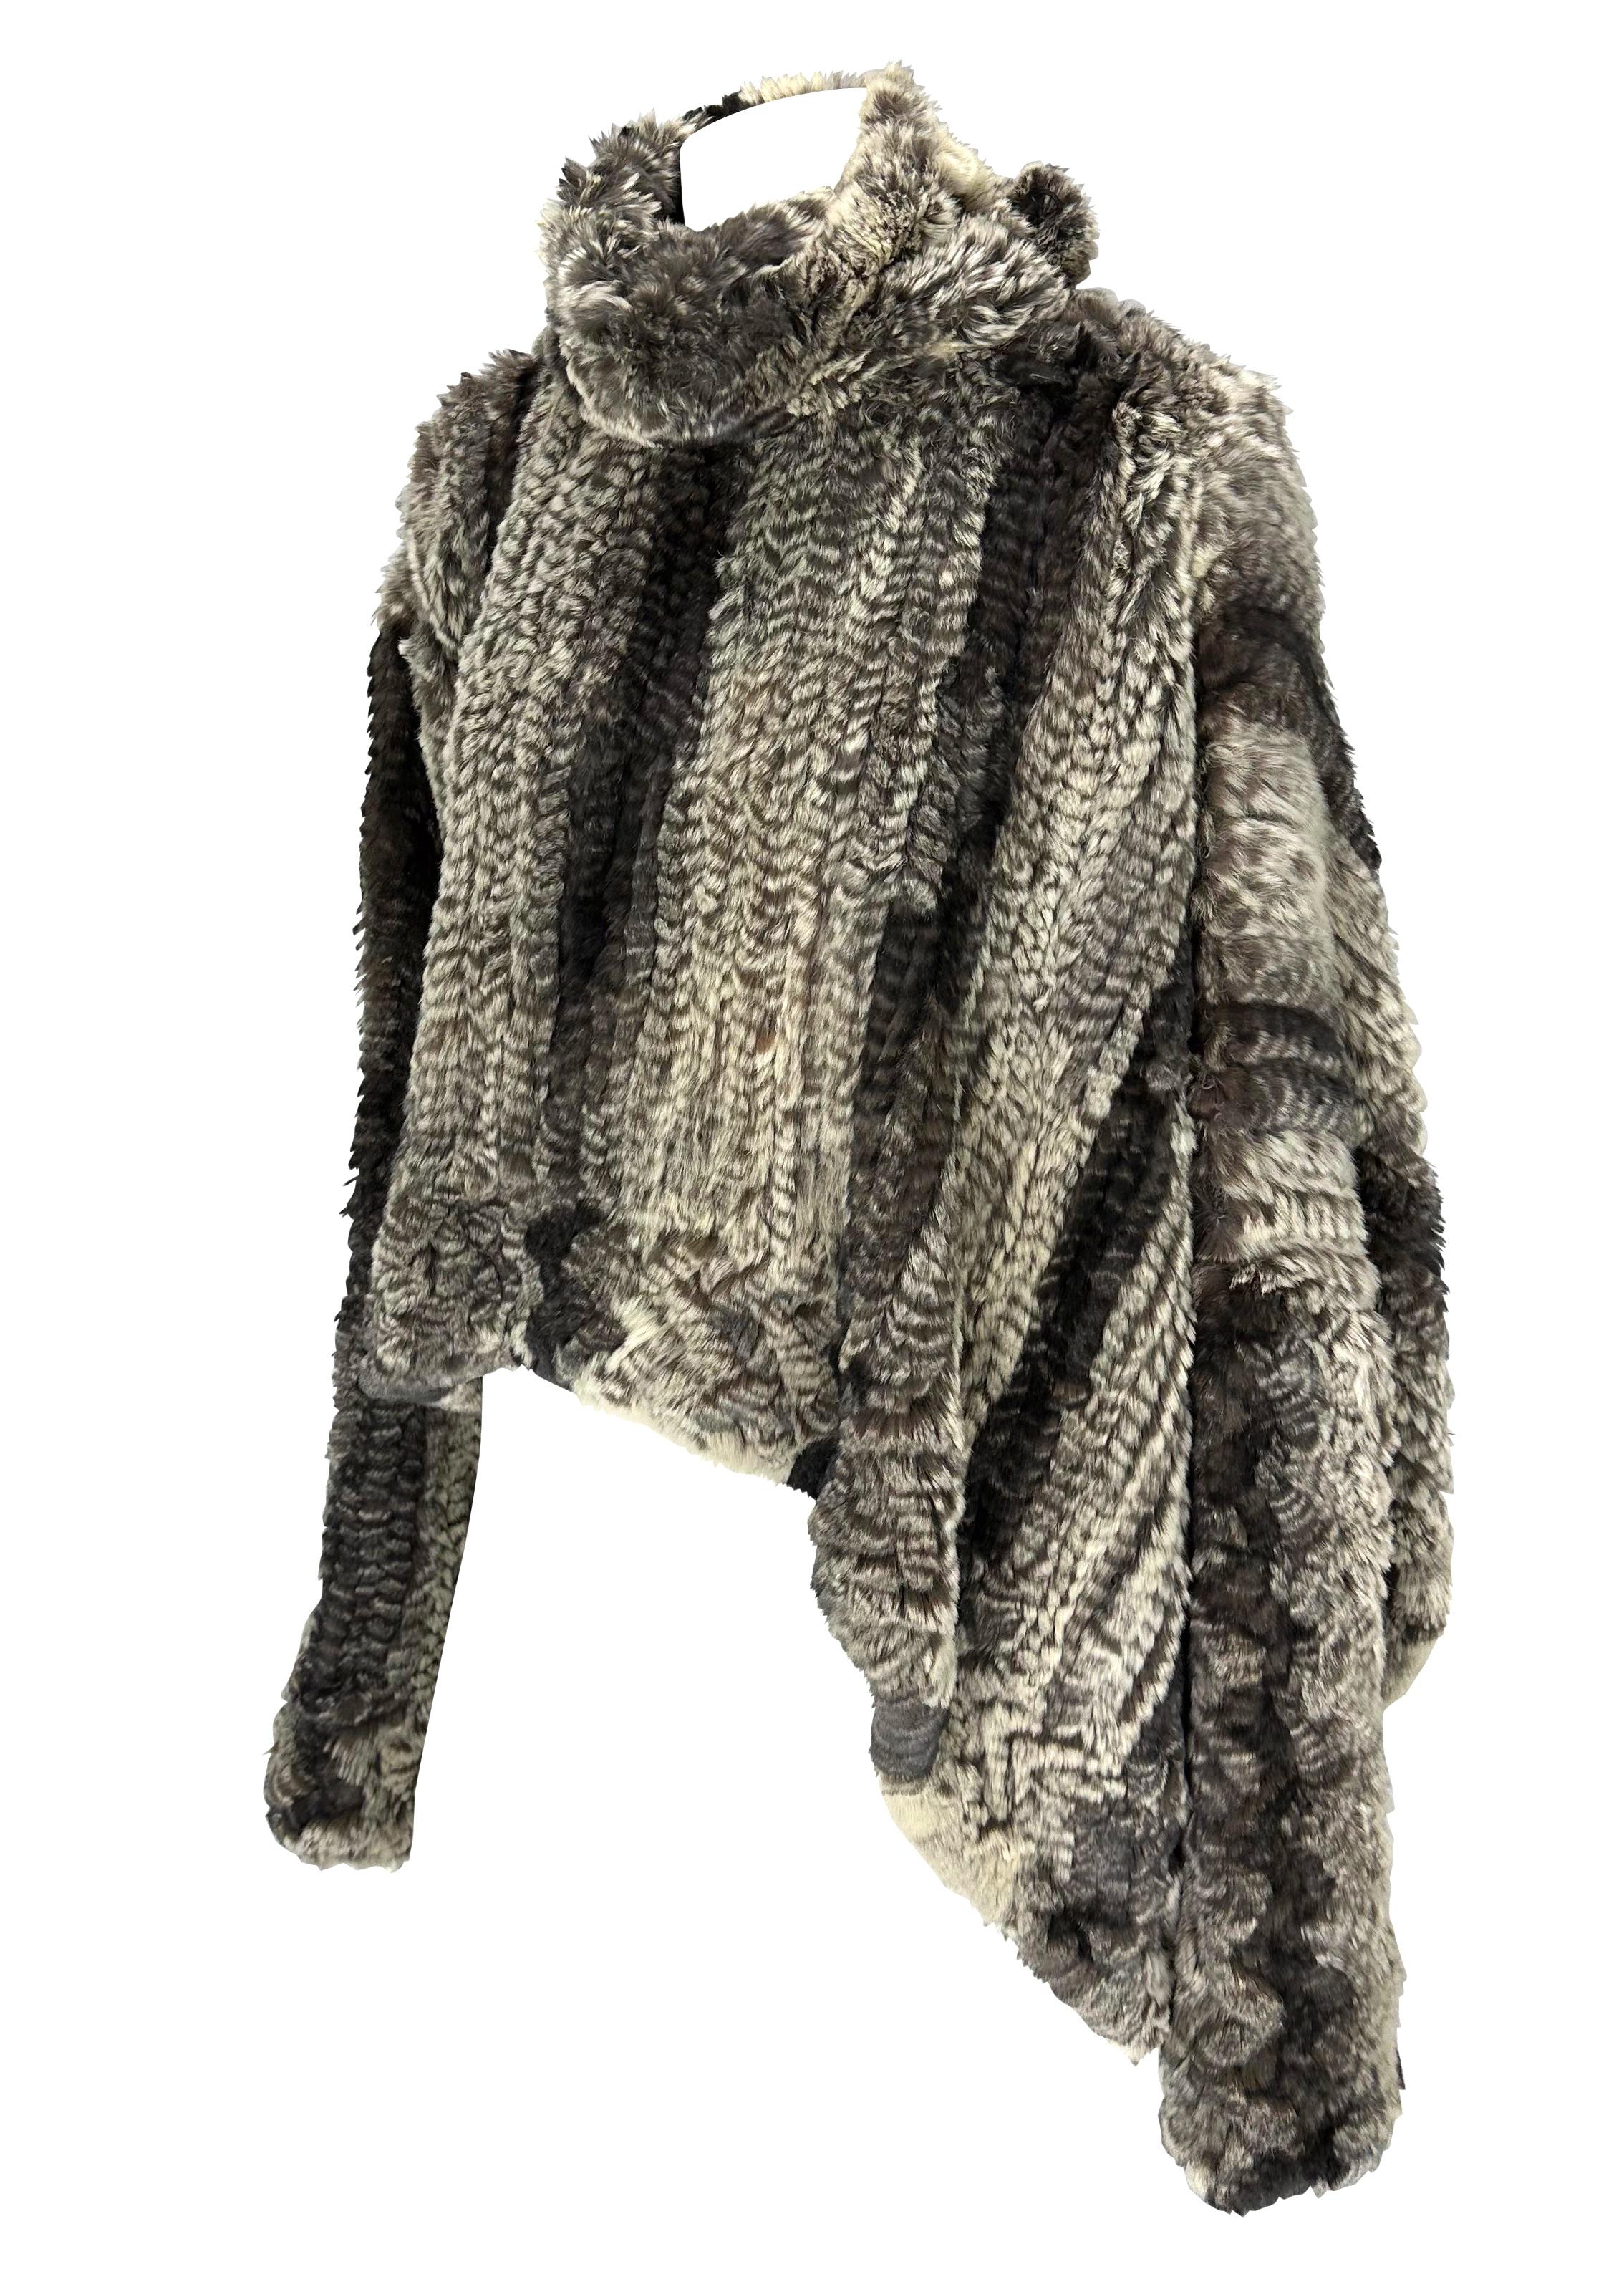 Voici un fabuleux pull tunique en tricot surdimensionné en lapin John Galliano. Issu de la collection automne/hiver 2000, ce top asymétrique doux présente un col roulé, une fermeture à boutons à l'encolure et des fentes sur les côtés. 

Mesures